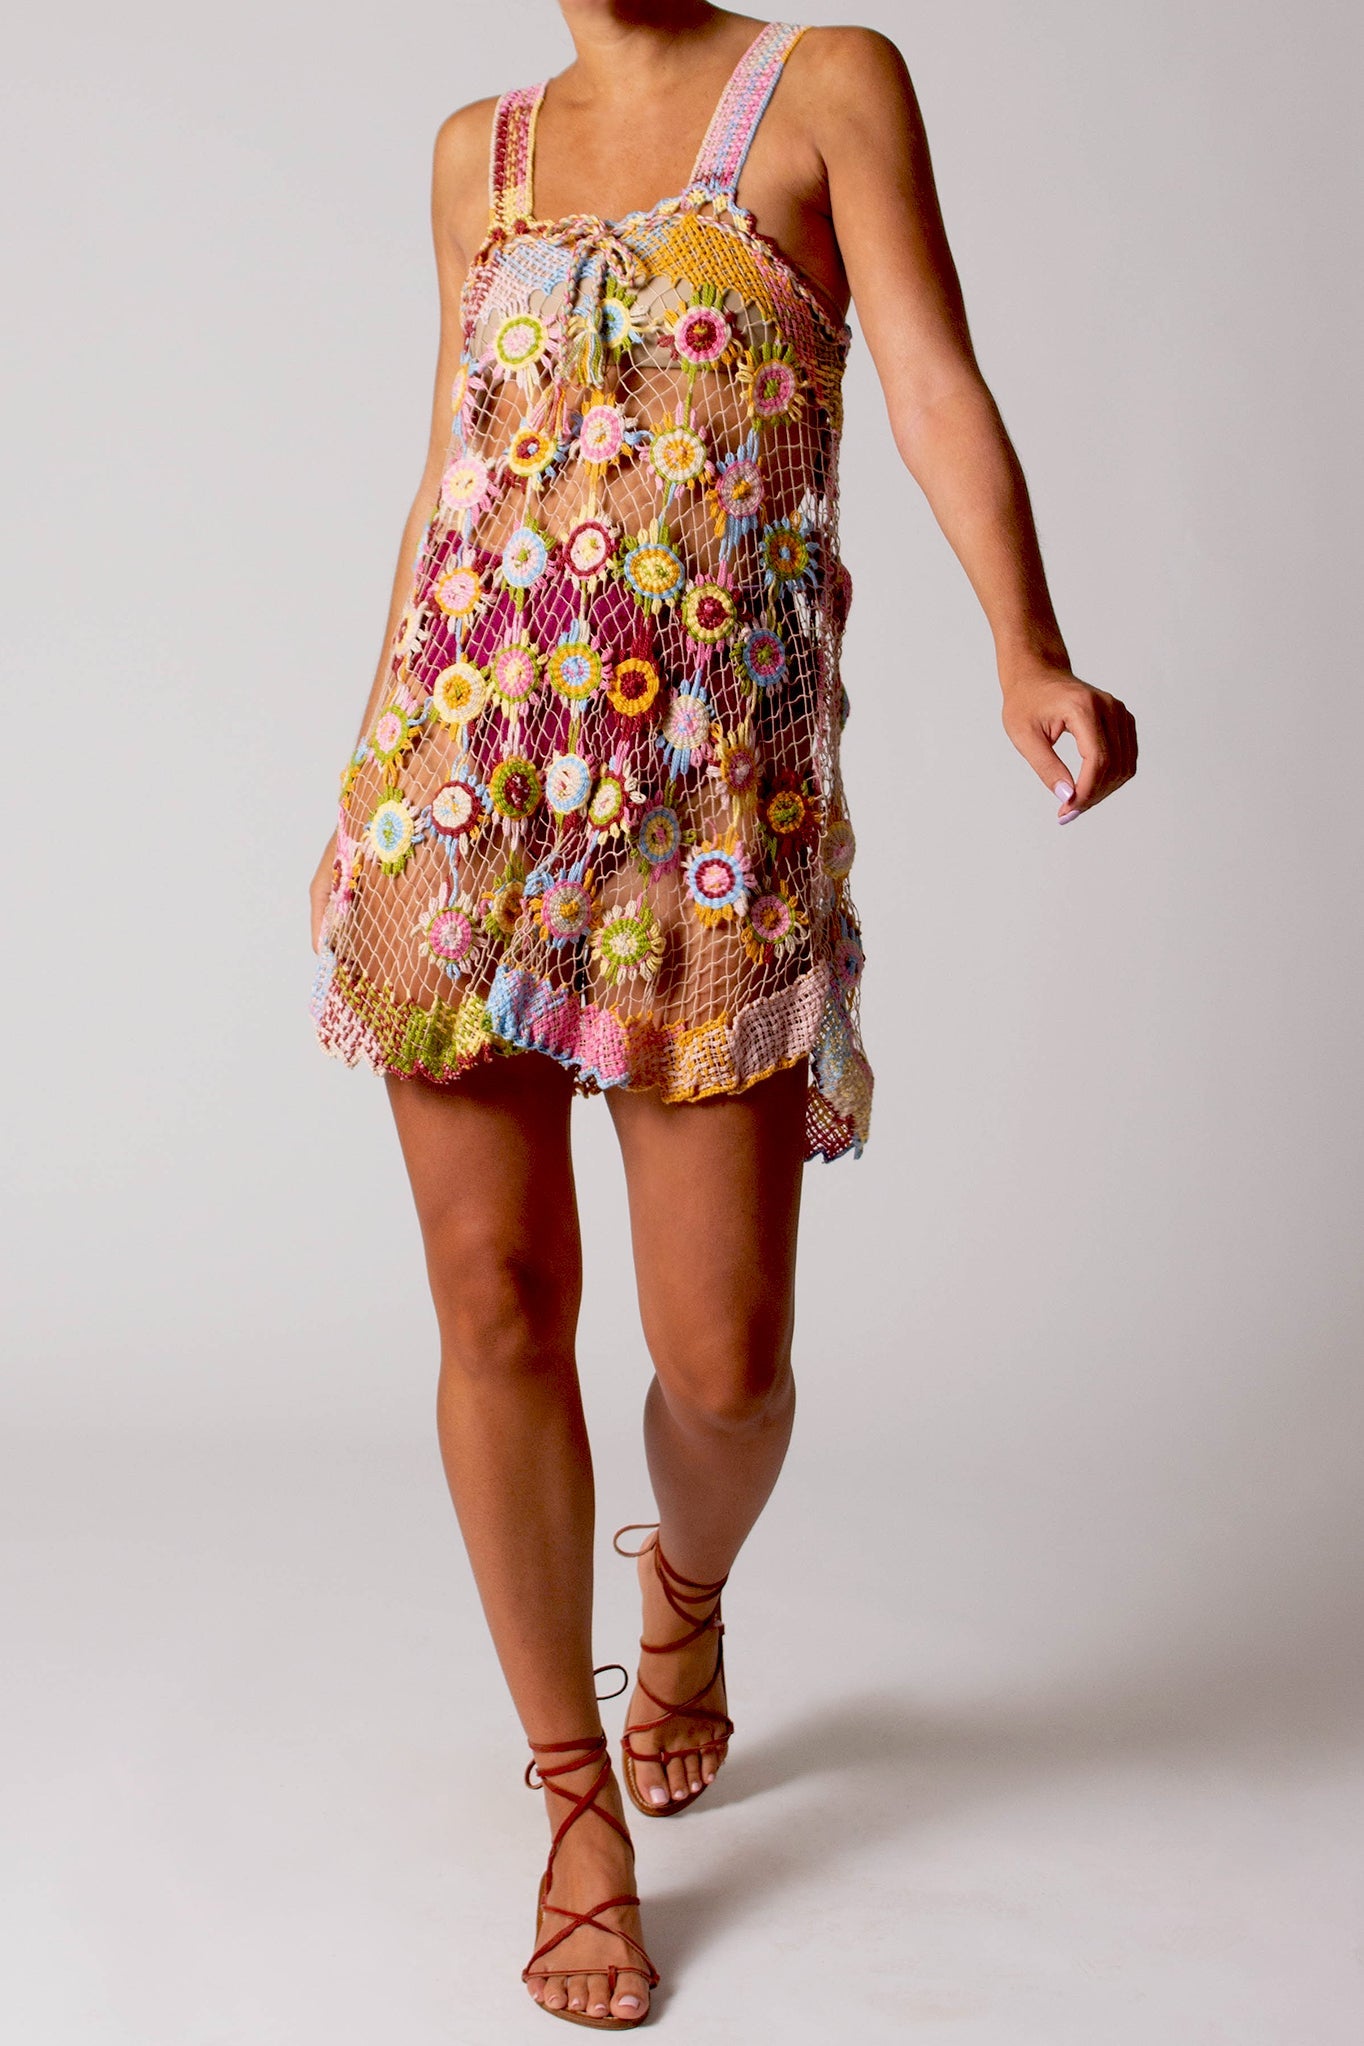 Vana Filet Mini Dress in Lollipop by Miguelina